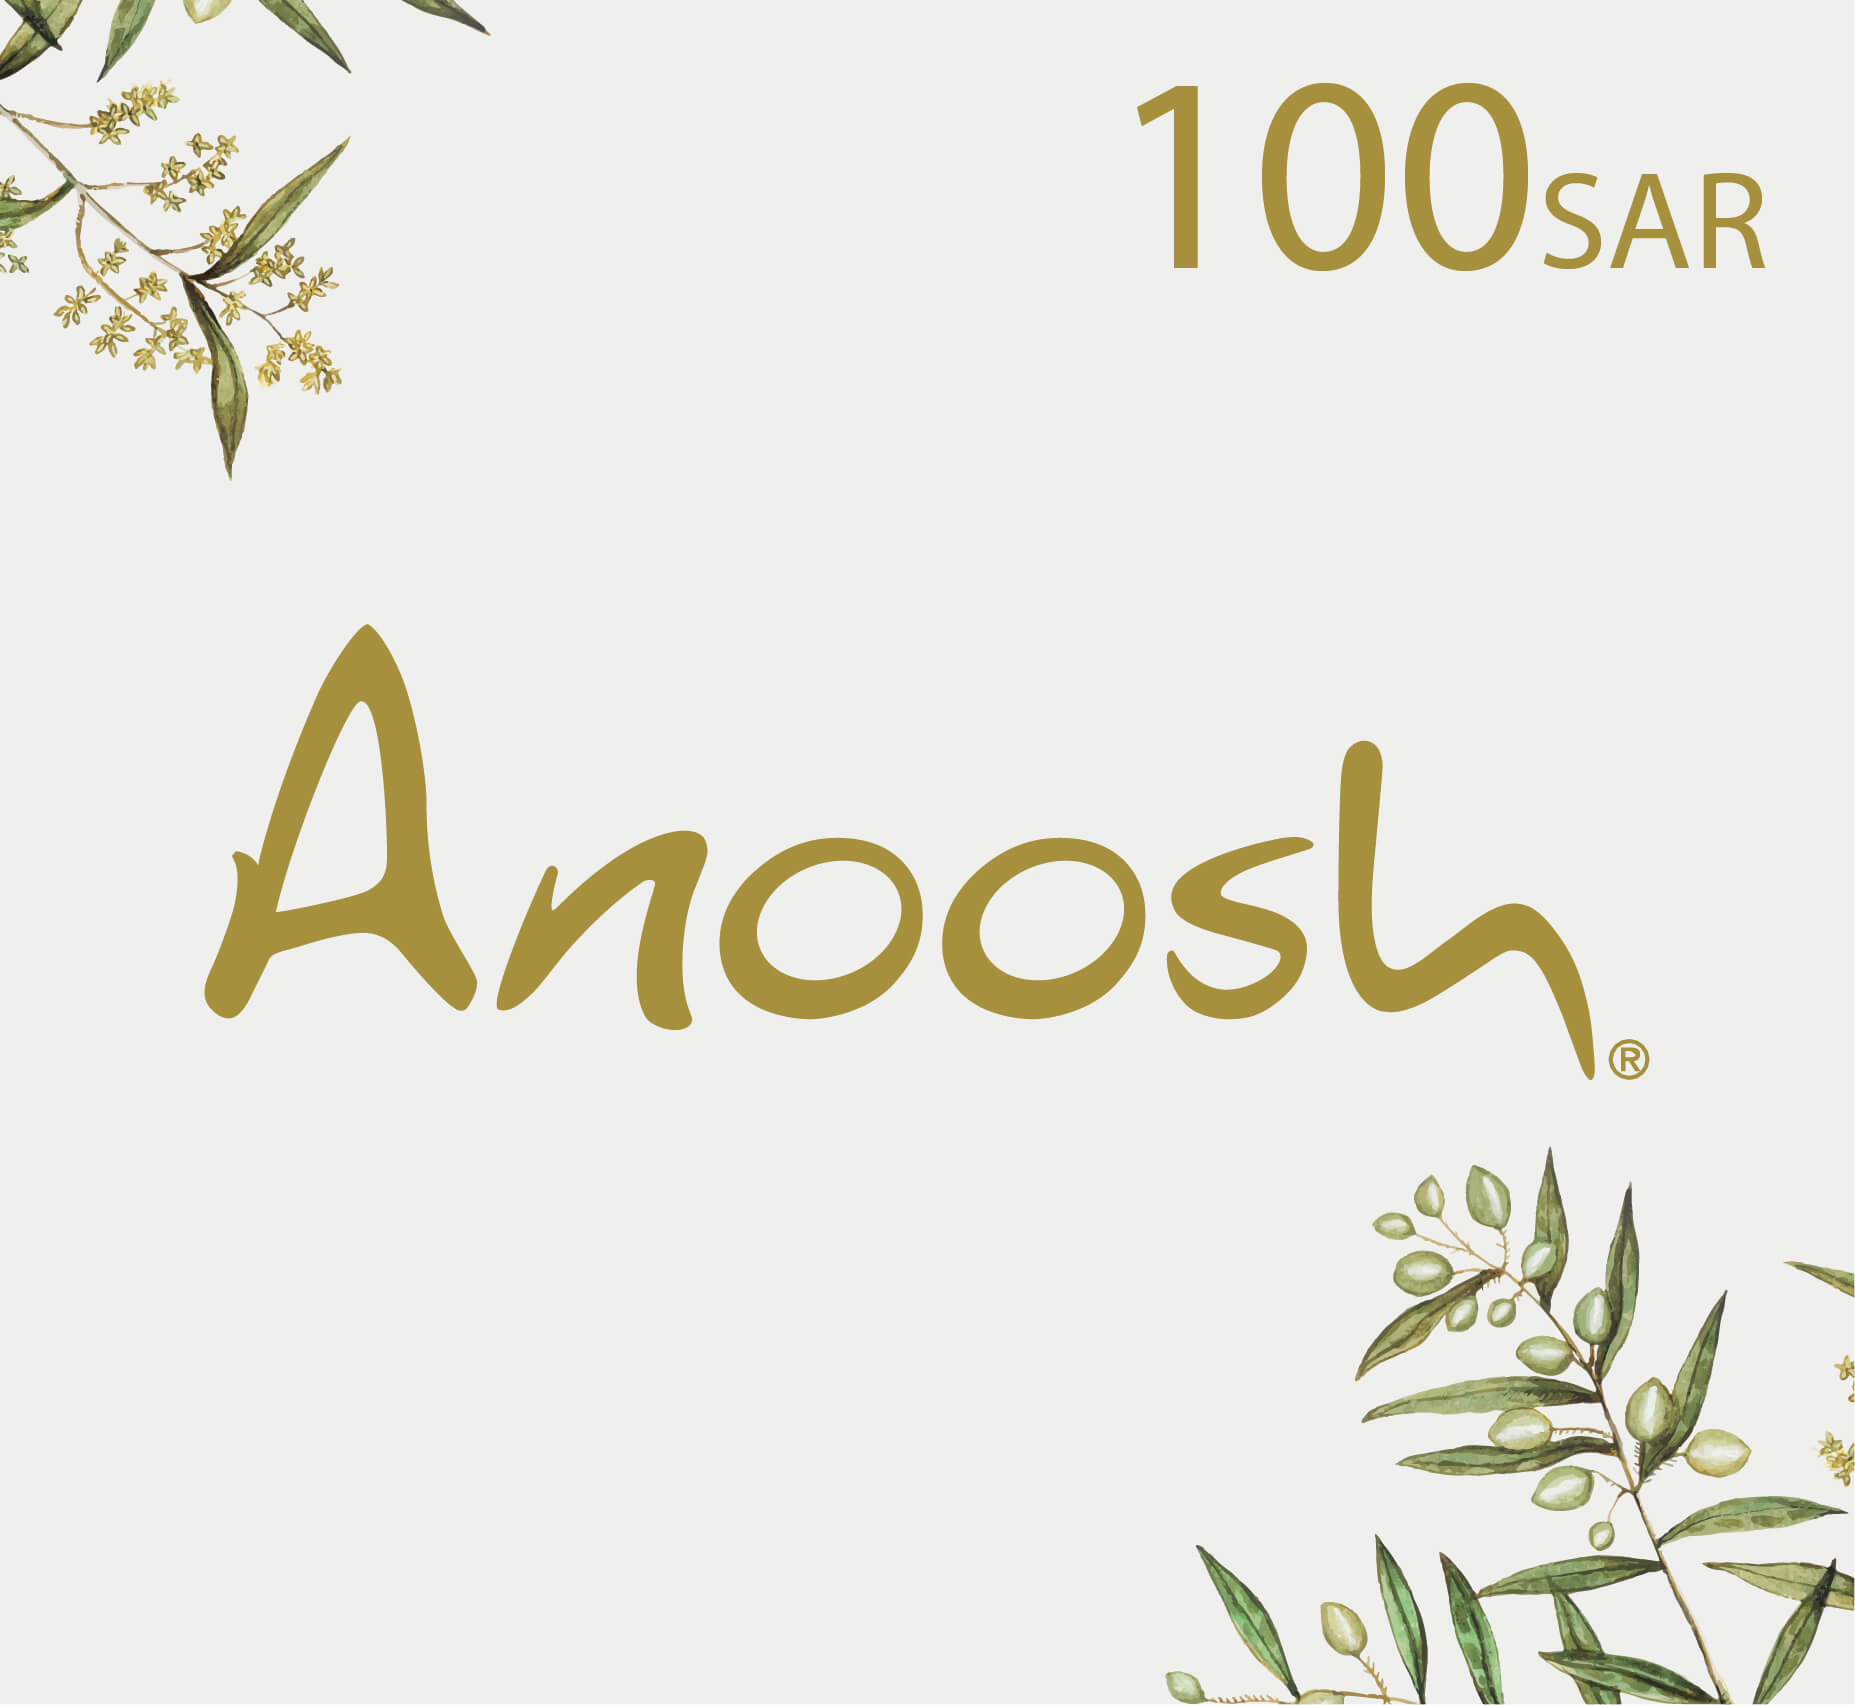 شراء بطاقة هدايا أنوش Anoosh - قسيمة شراء أنوش - 100 ريال